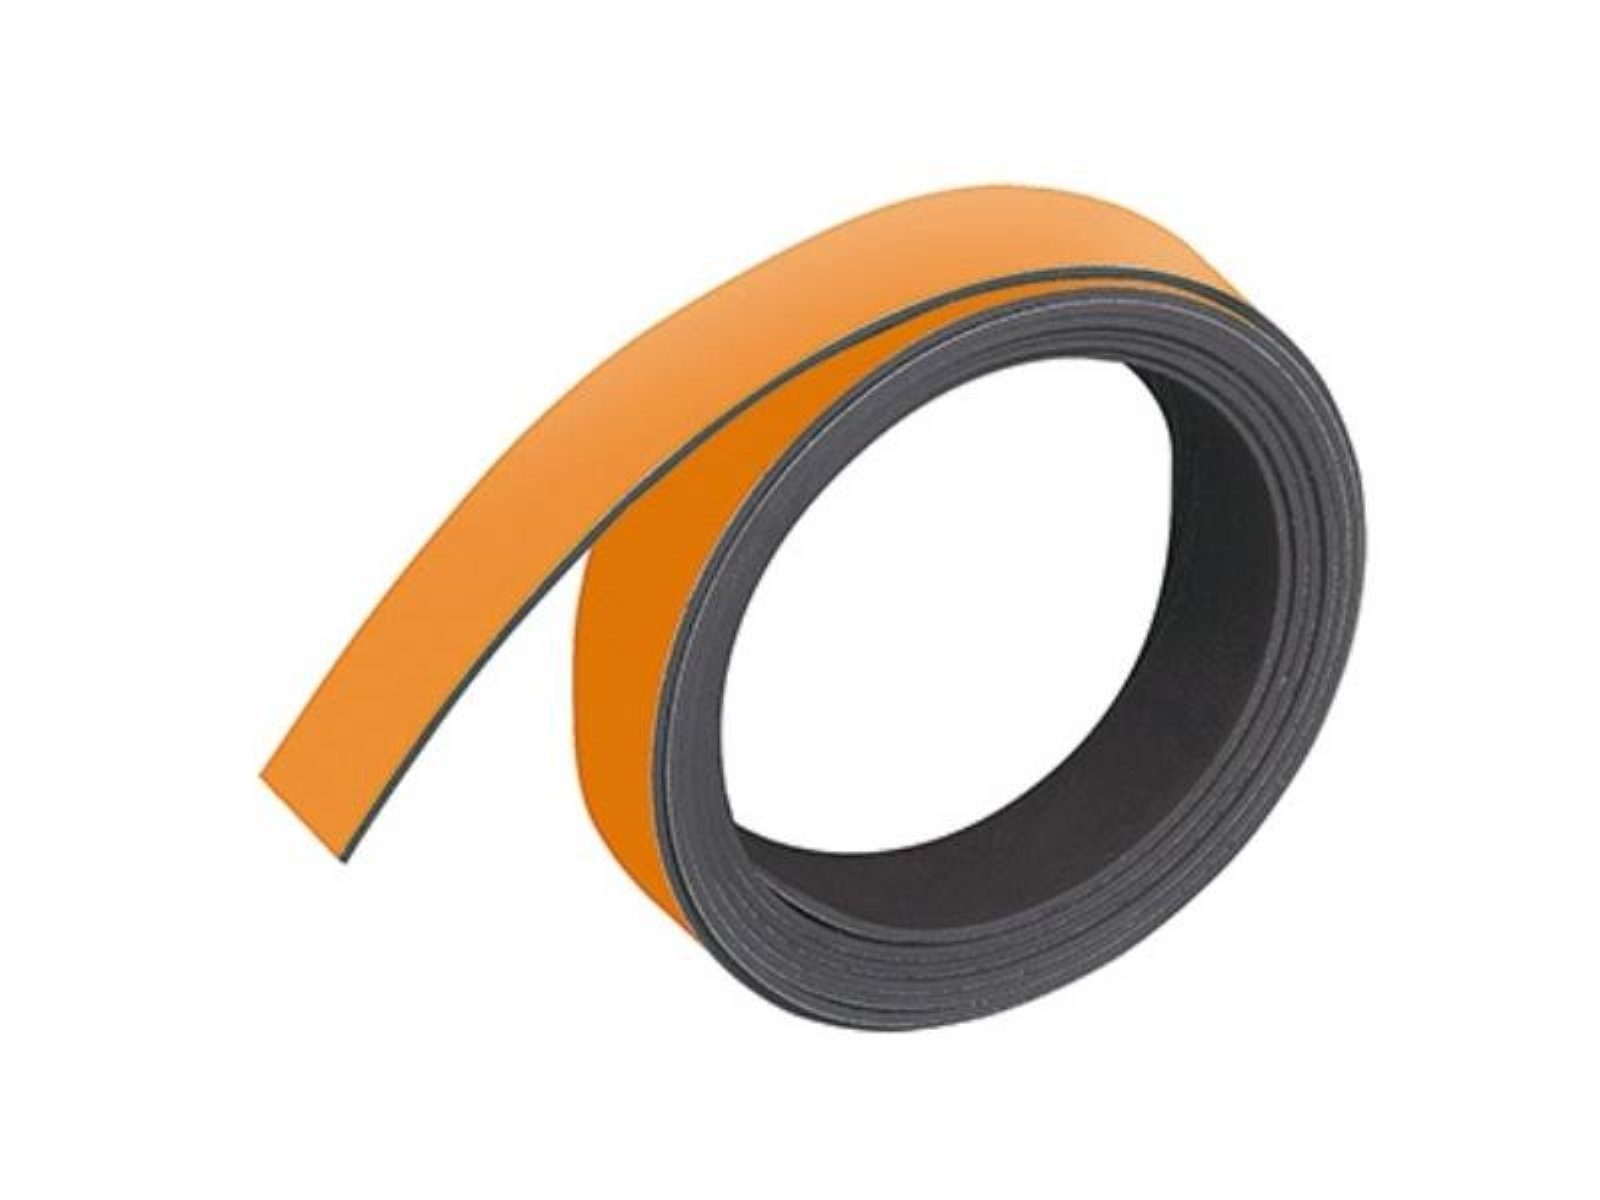 Magnetband (B 1 x M802 Magnet m 10 D FRANKEN 05 FRANKEN L) orange mm Franken Zur x